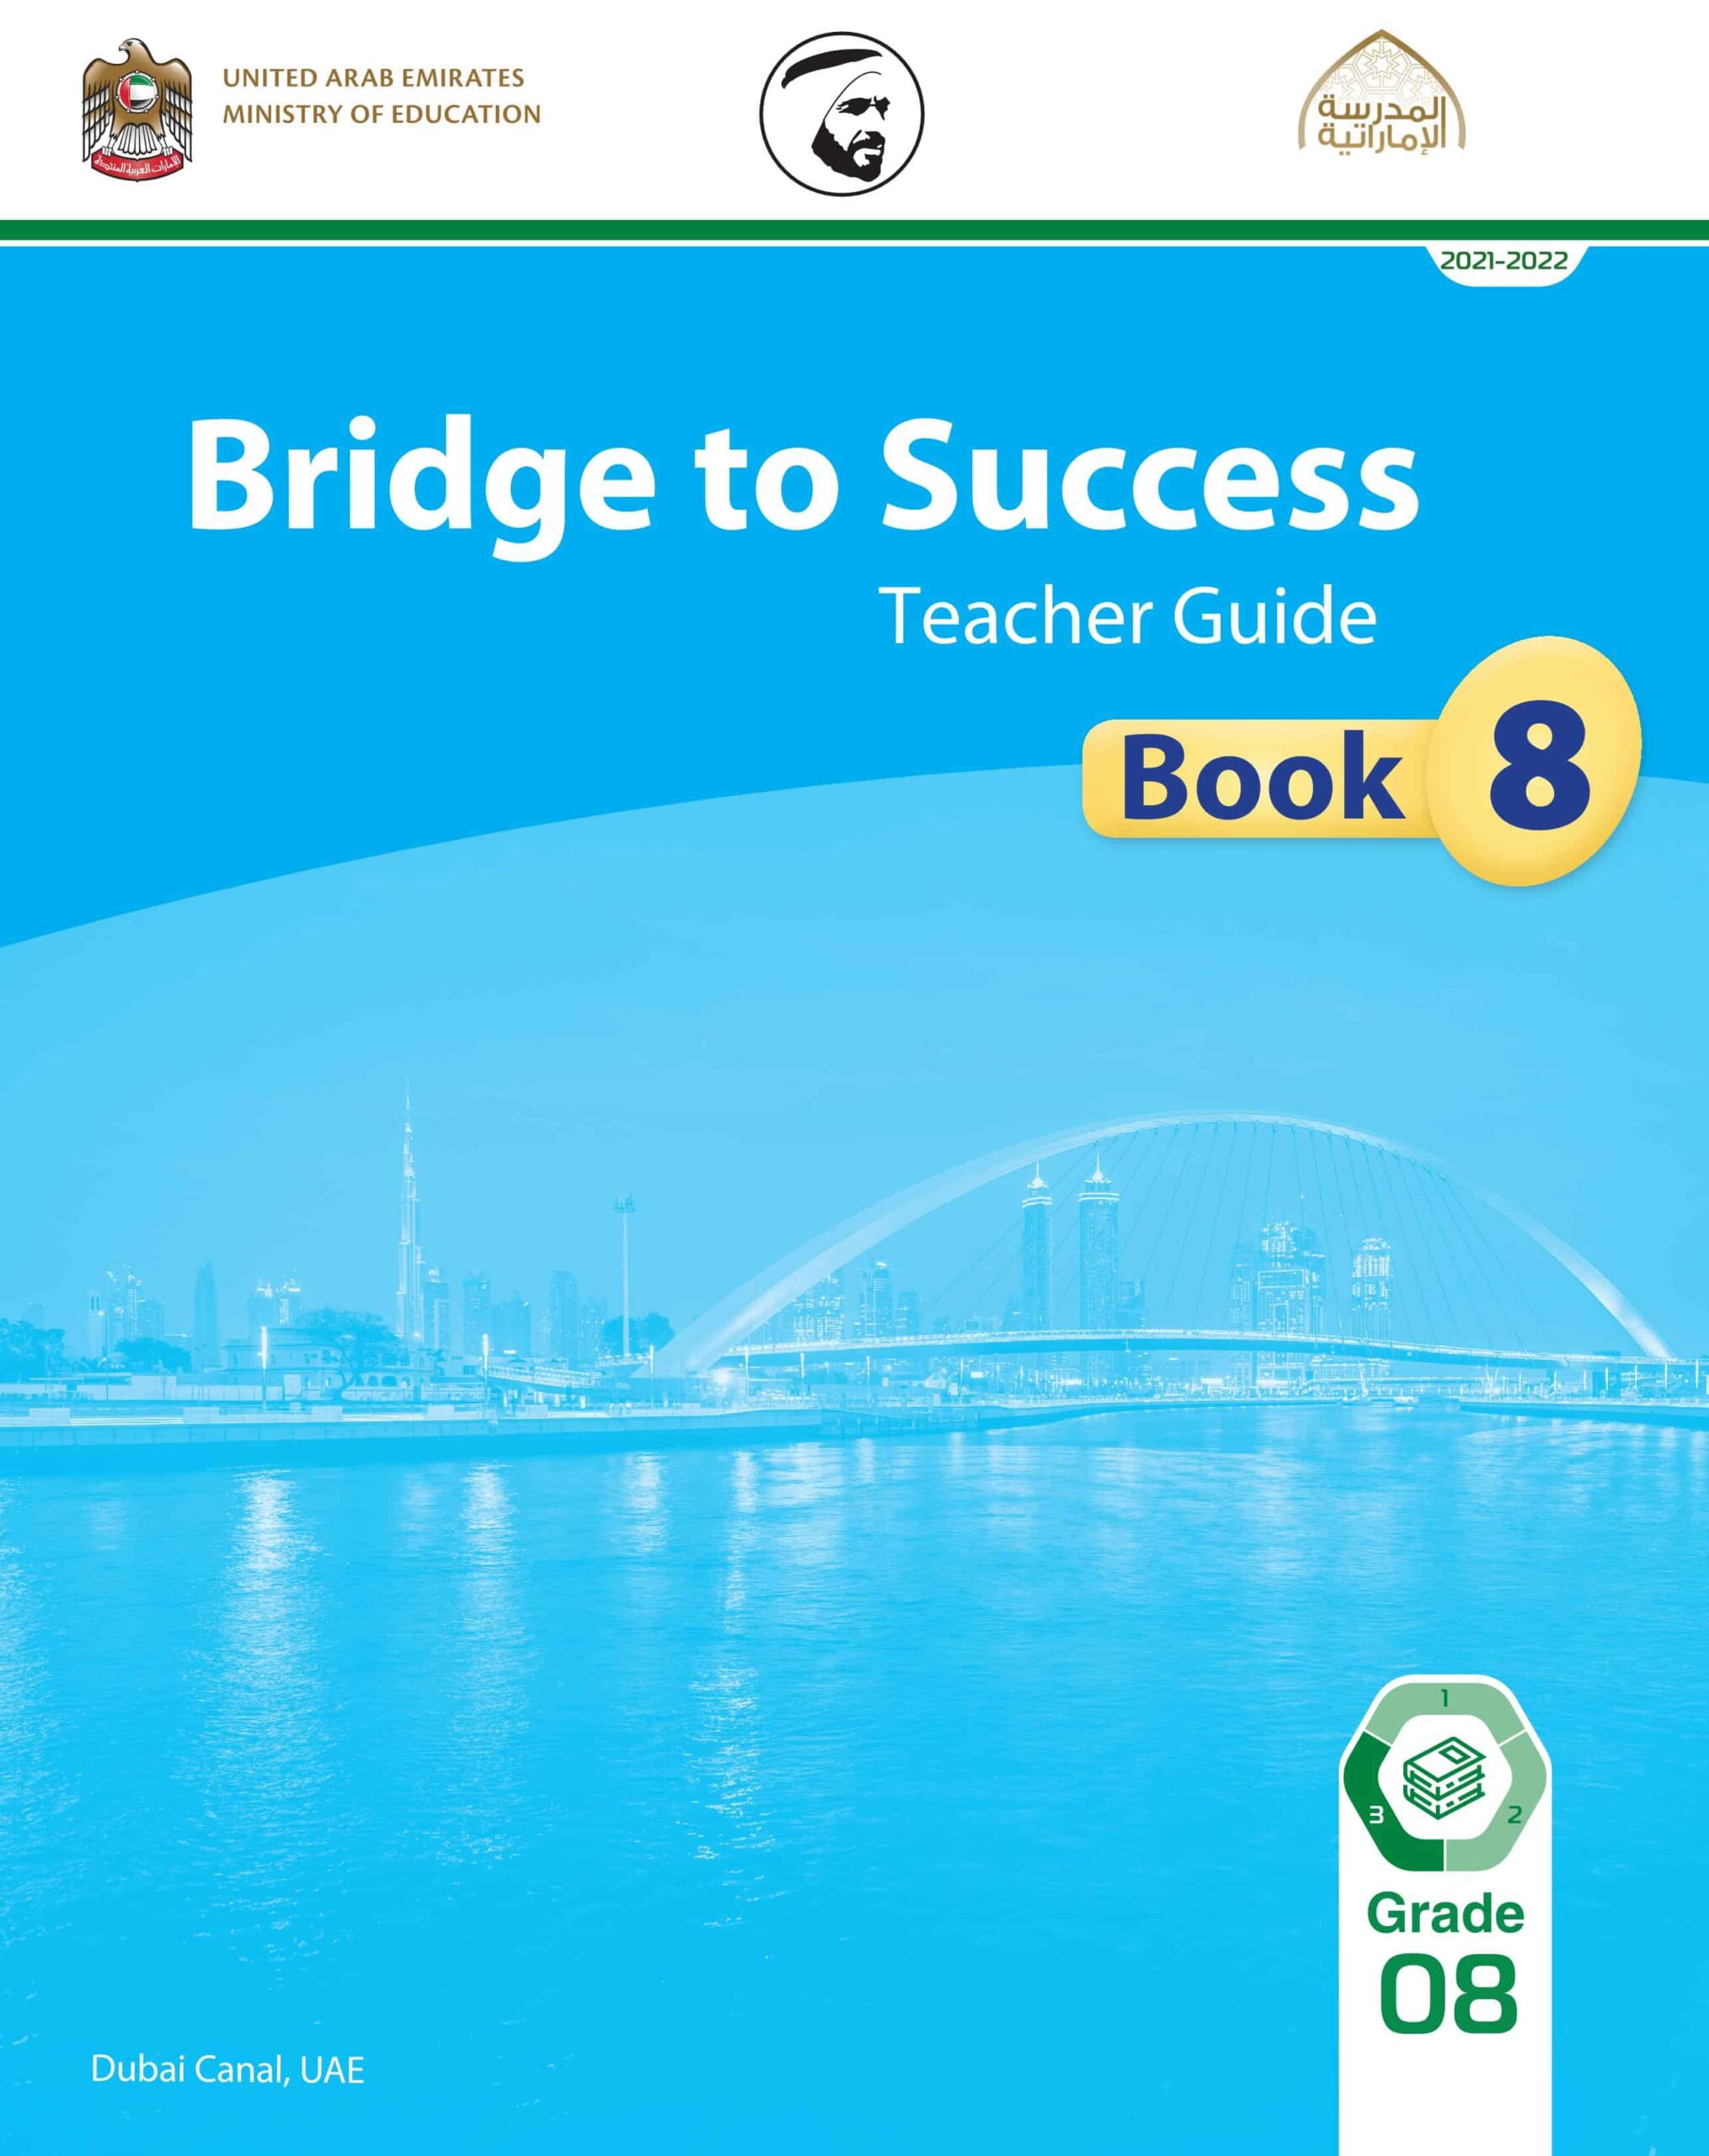 كتاب دليل المعلم اللغة الإنجليزية الصف الثامن الفصل الدراسيي الثالث 2021-2022